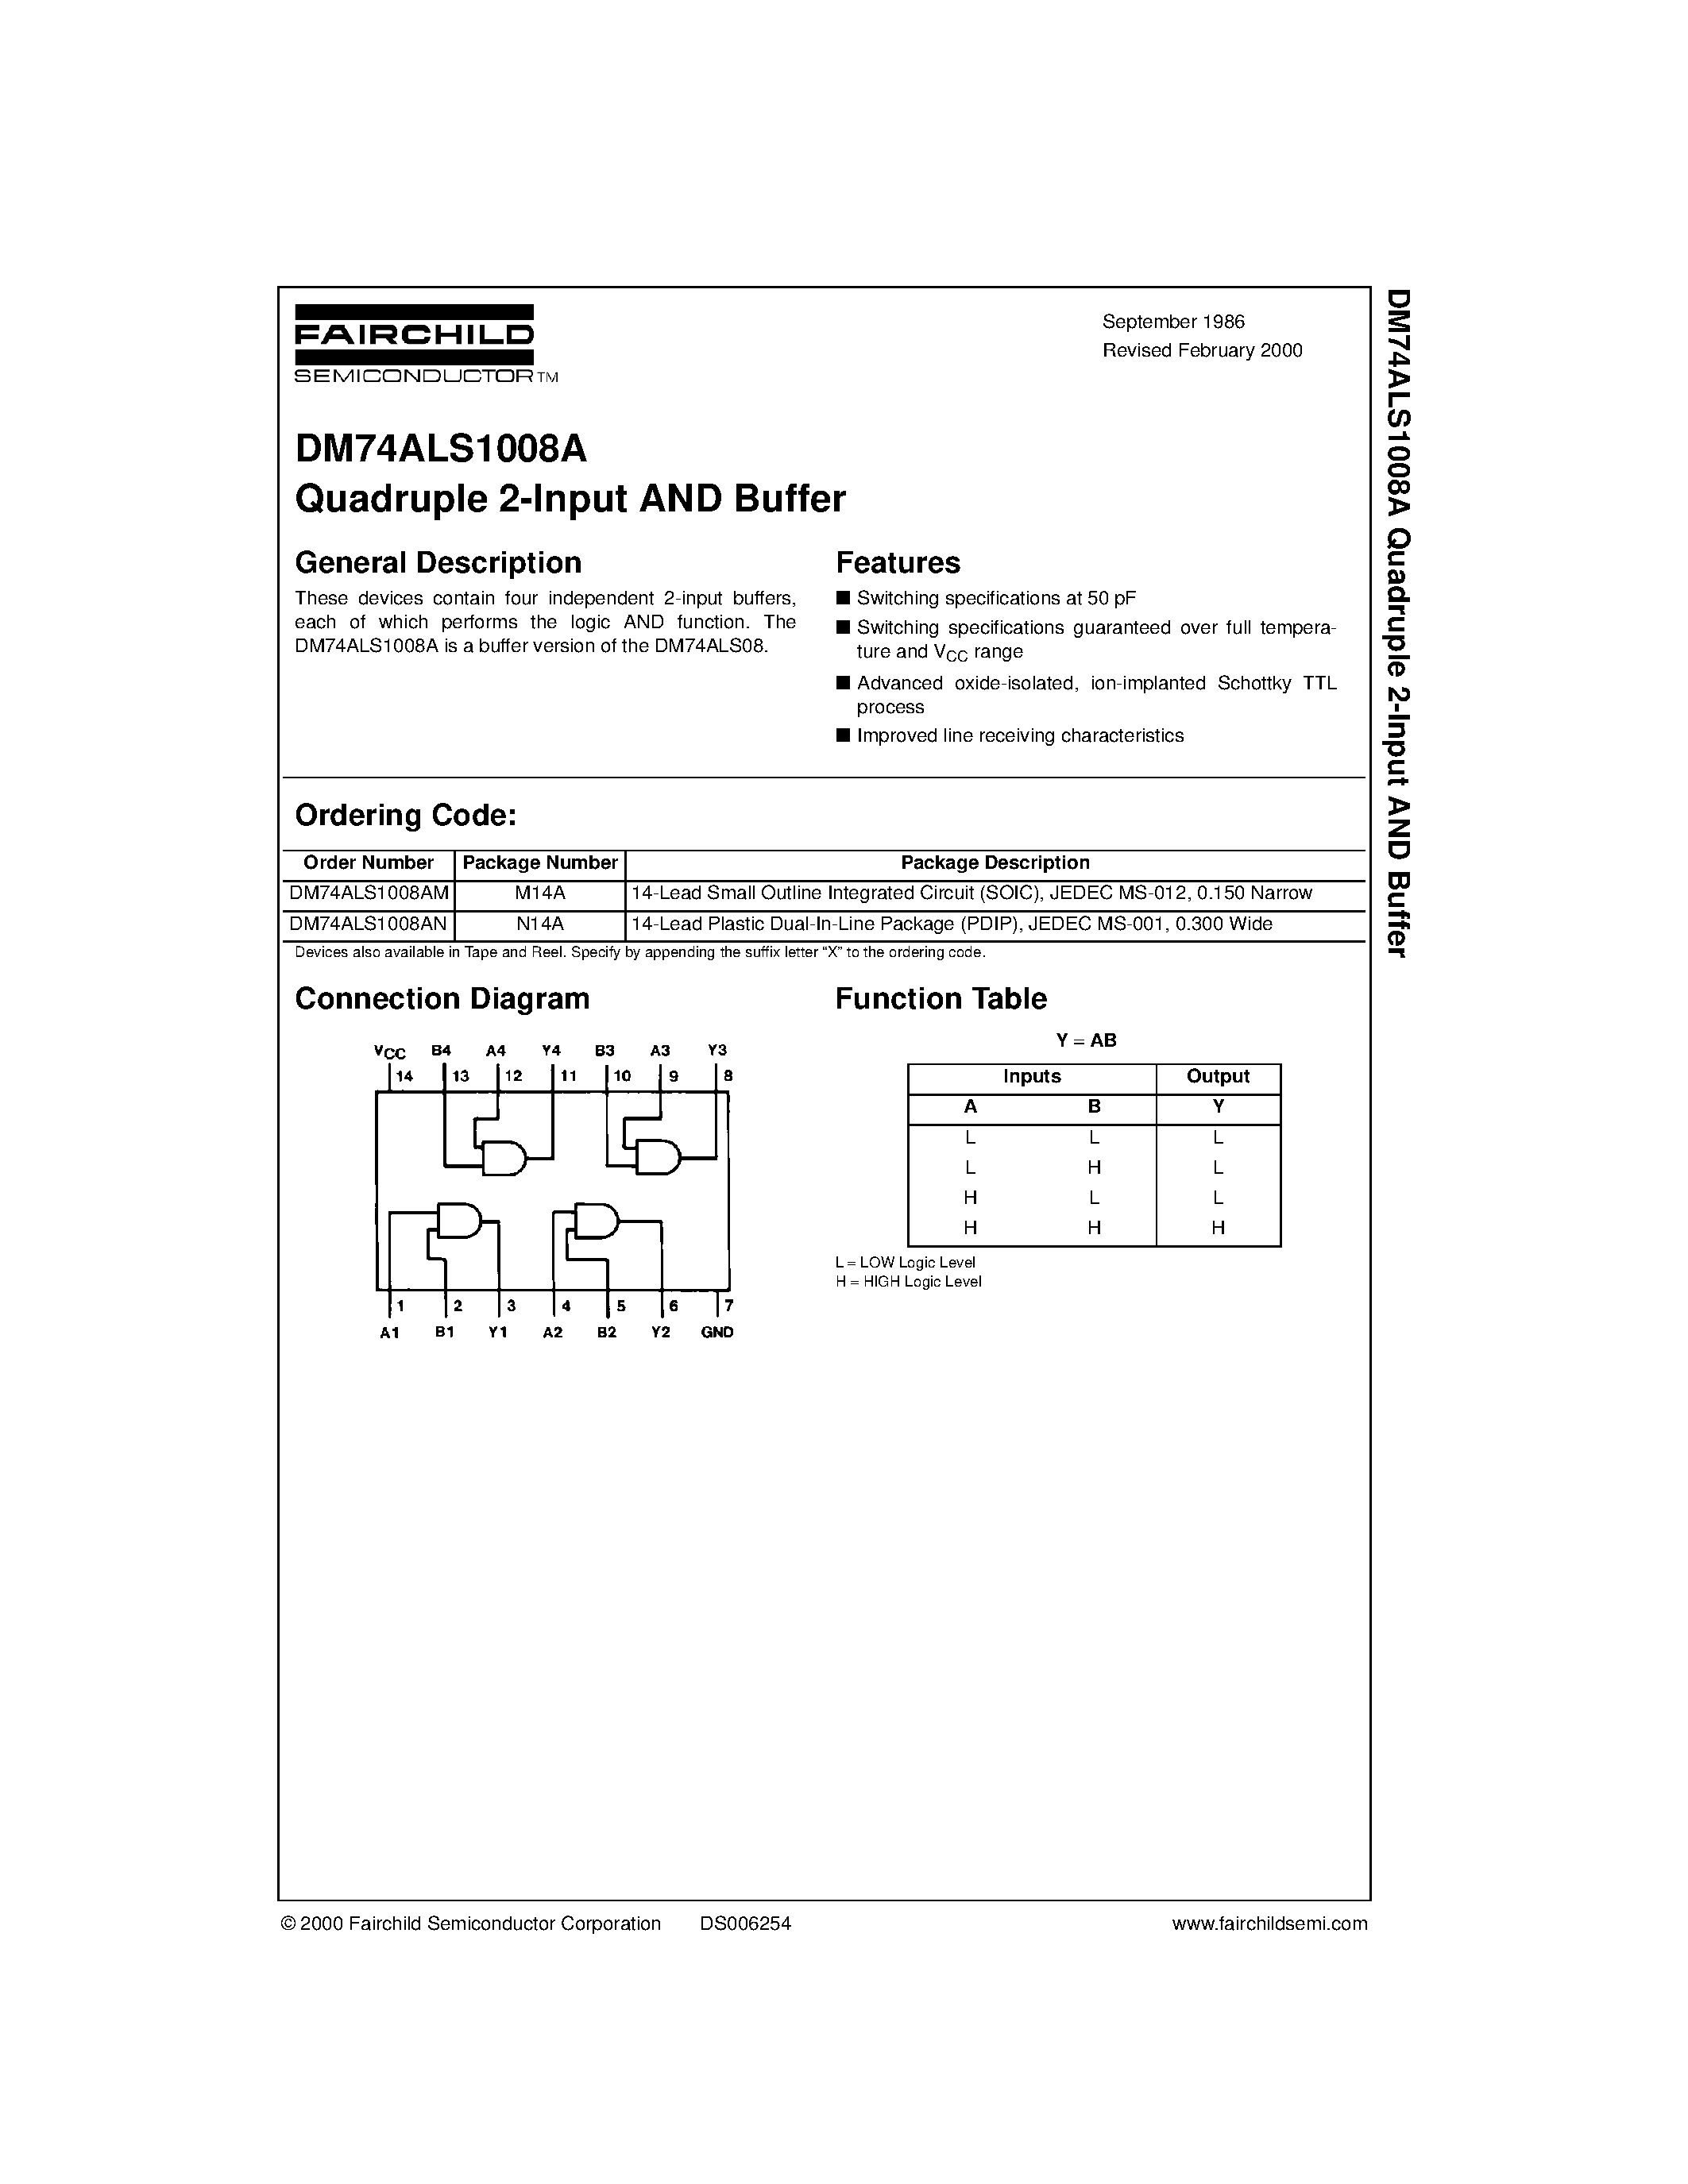 Datasheet DM74ALS1008AM - Quadruple 2-Input AND Buffer page 1